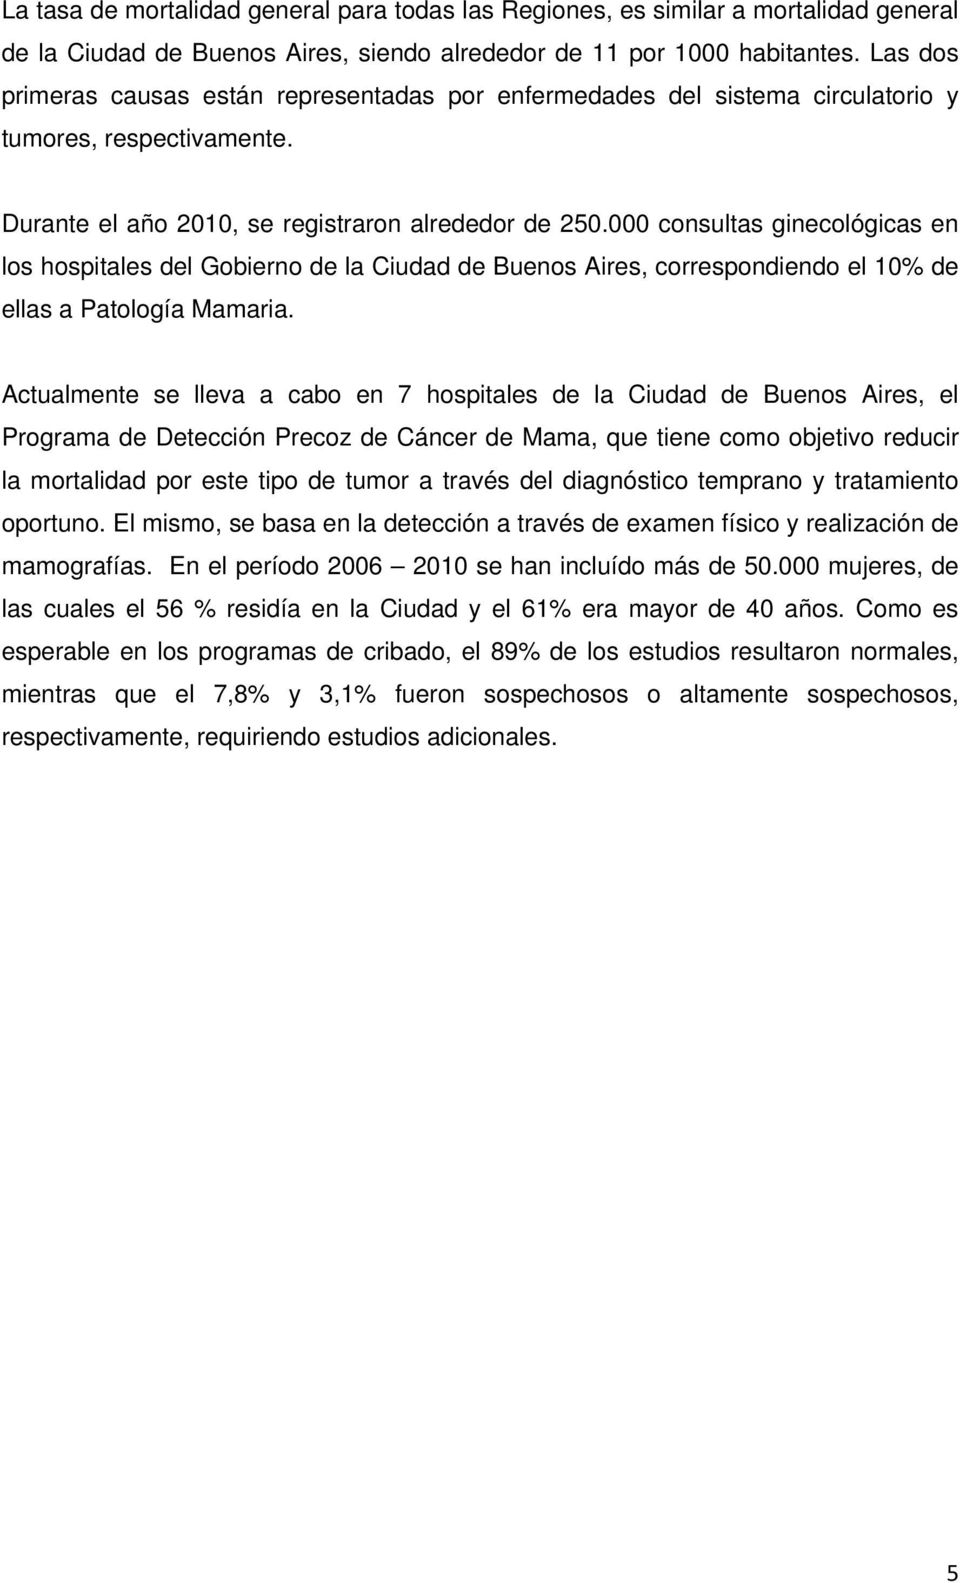 000 consultas ginecológicas en los hospitales del Gobierno de la Ciudad de Buenos Aires, correspondiendo el 10% de ellas a Patología Mamaria.